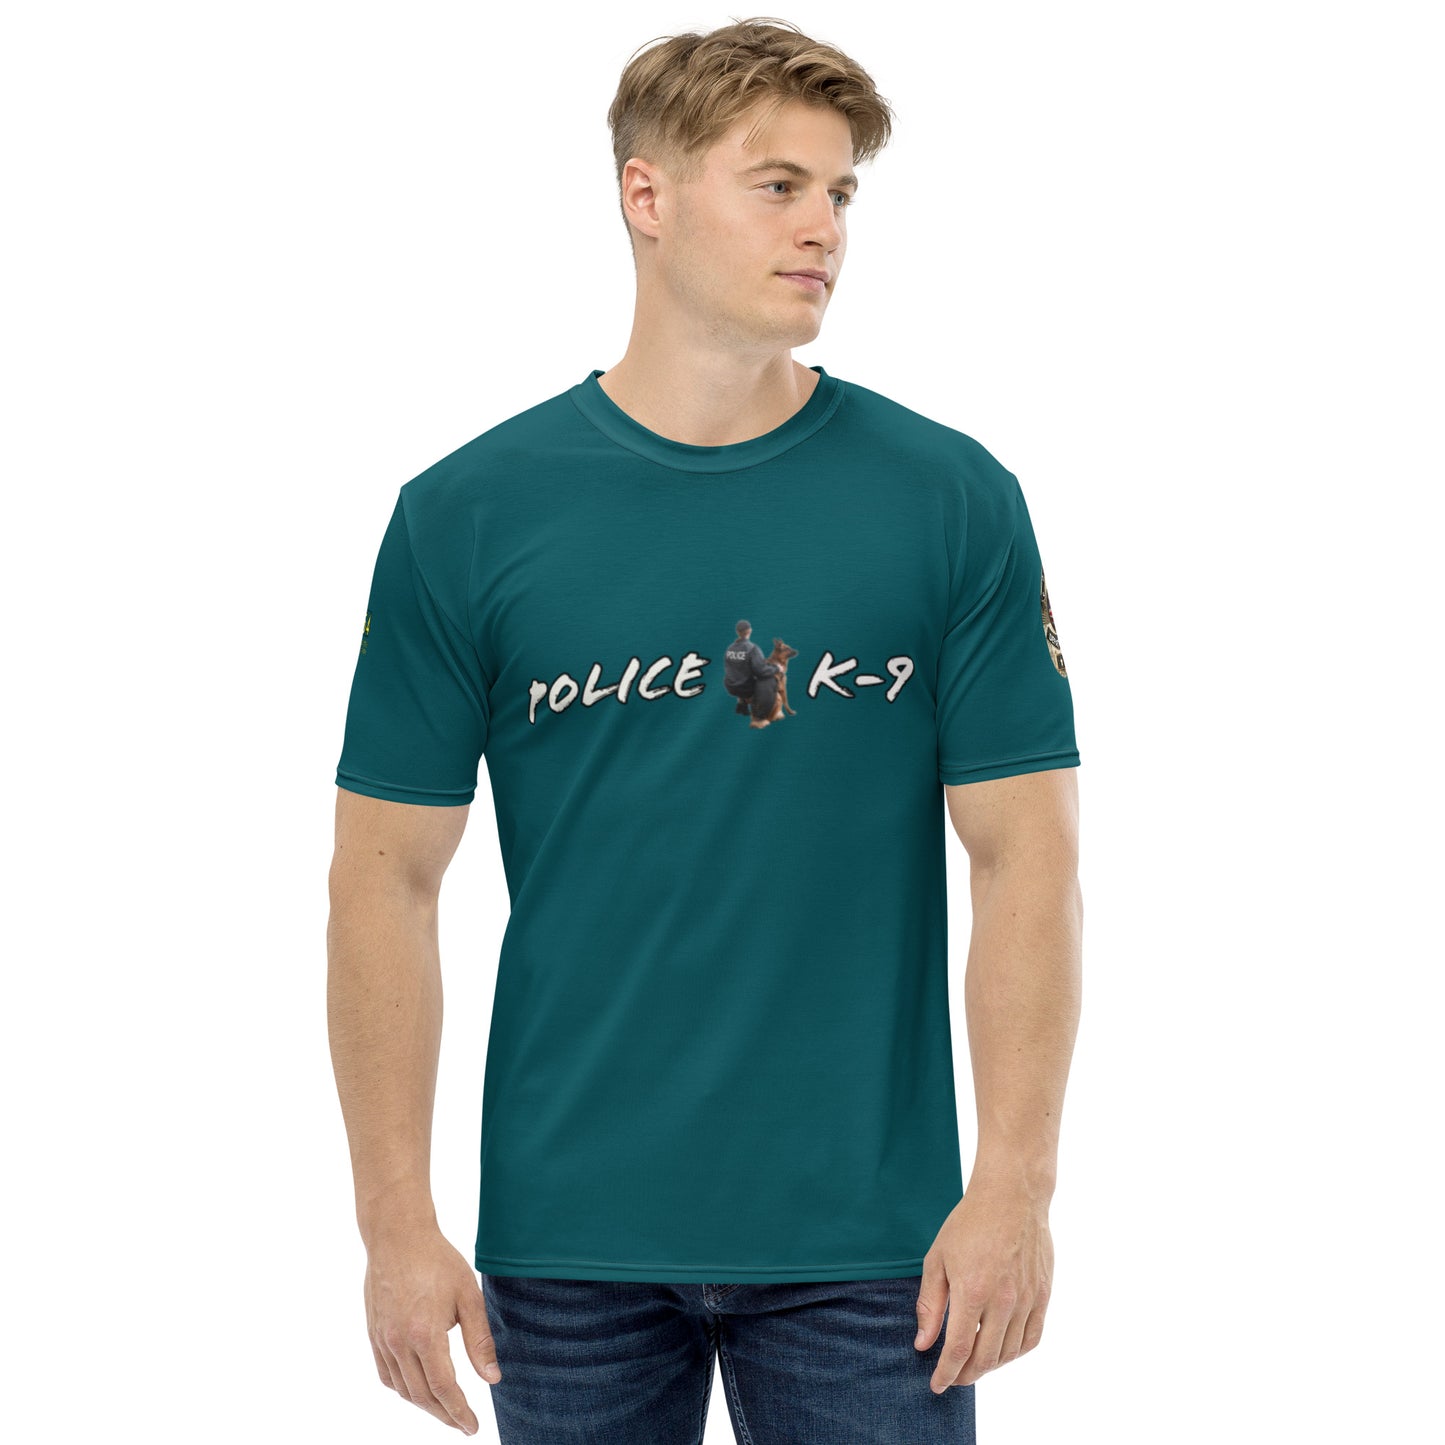 Police K-9 954 Men's t-shirt